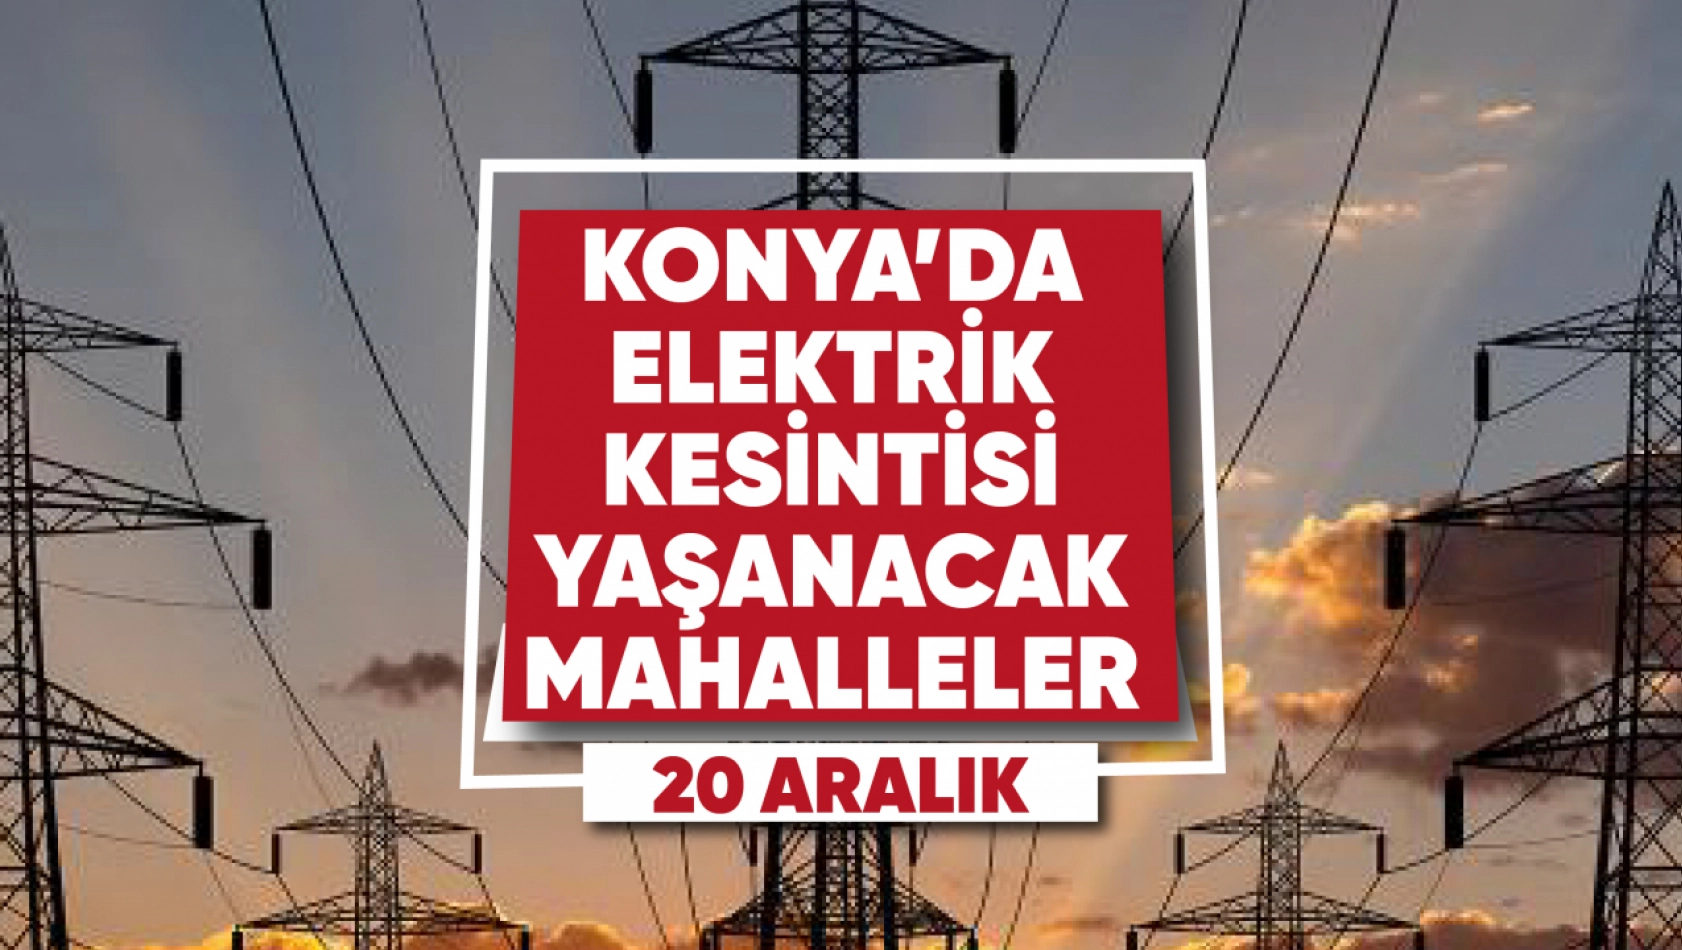 Konya'da elektrik kesintisi yaşanacak mahalle ve sokaklar (20 Aralık)